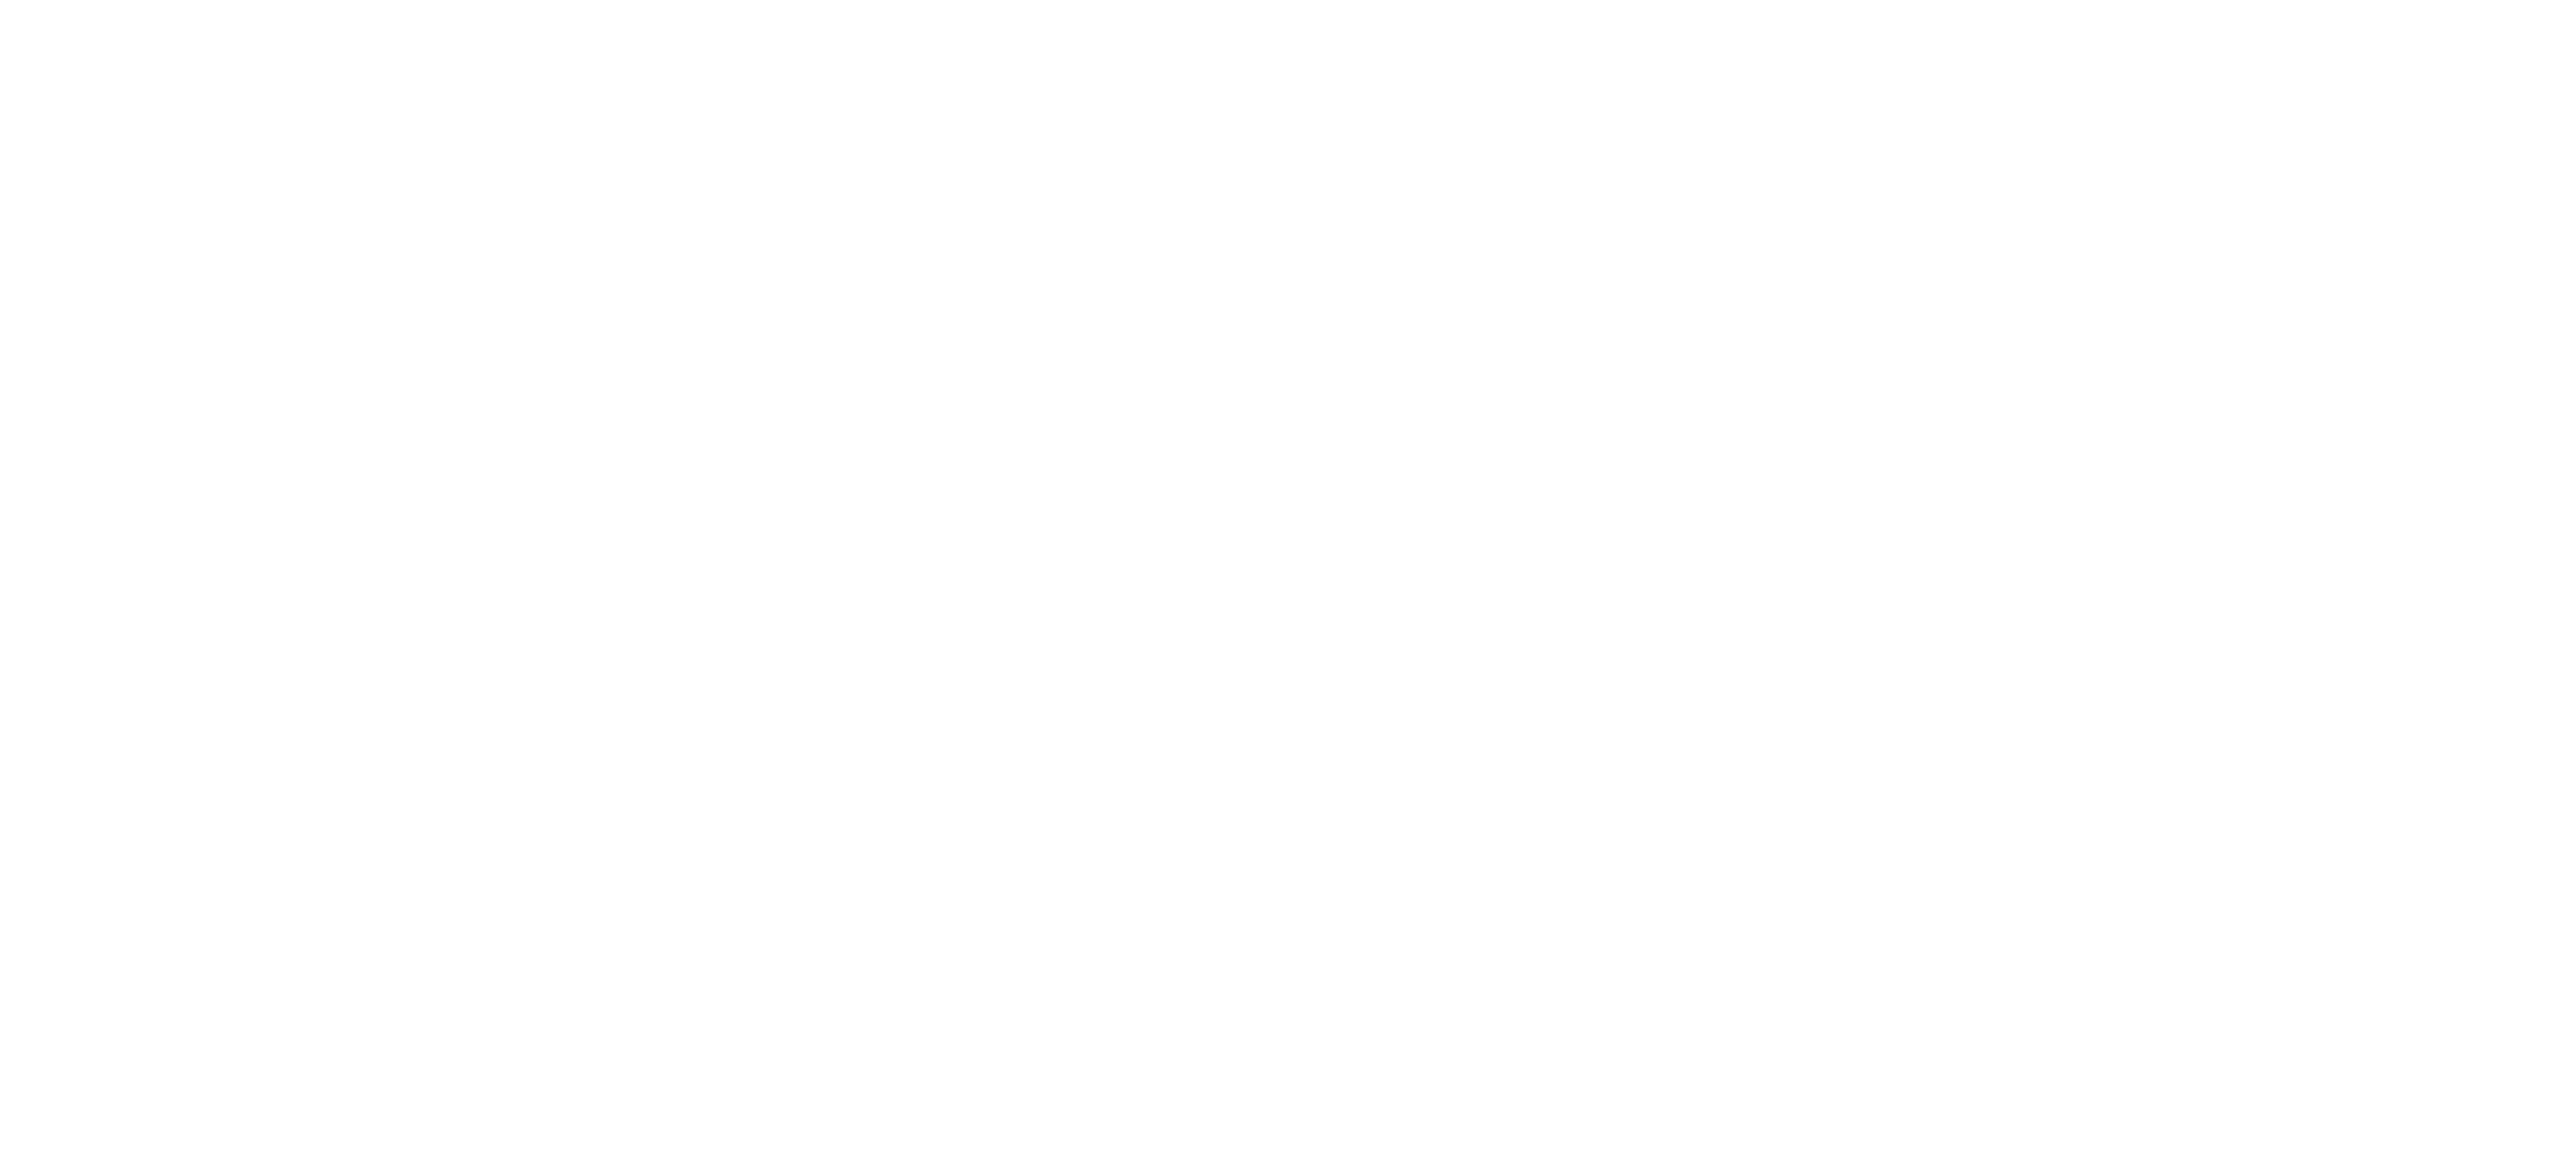 Vair Contracting Inc